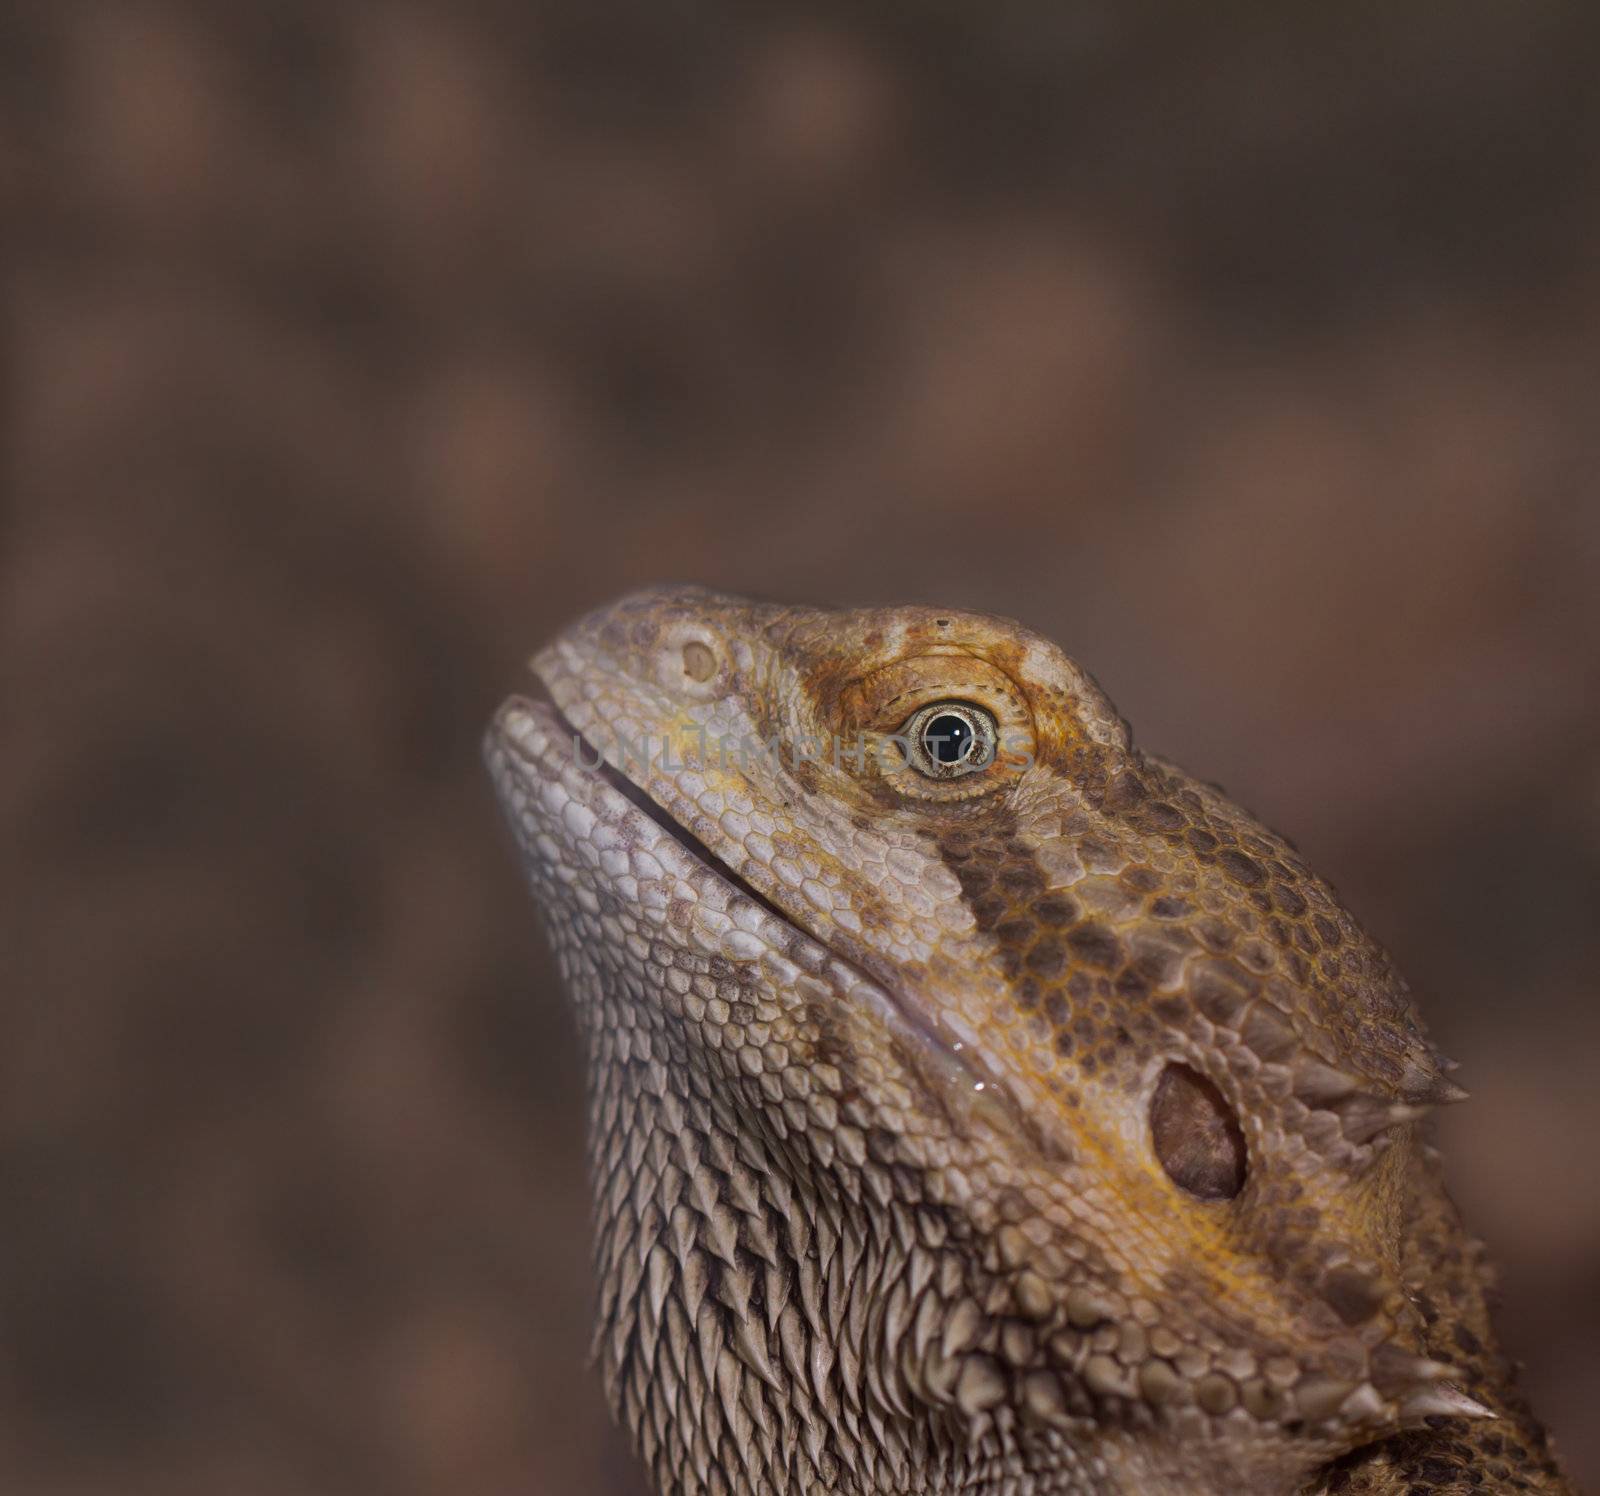 Close-up of Bearded dragons eye (Pogona vitticeps) by NagyDodo